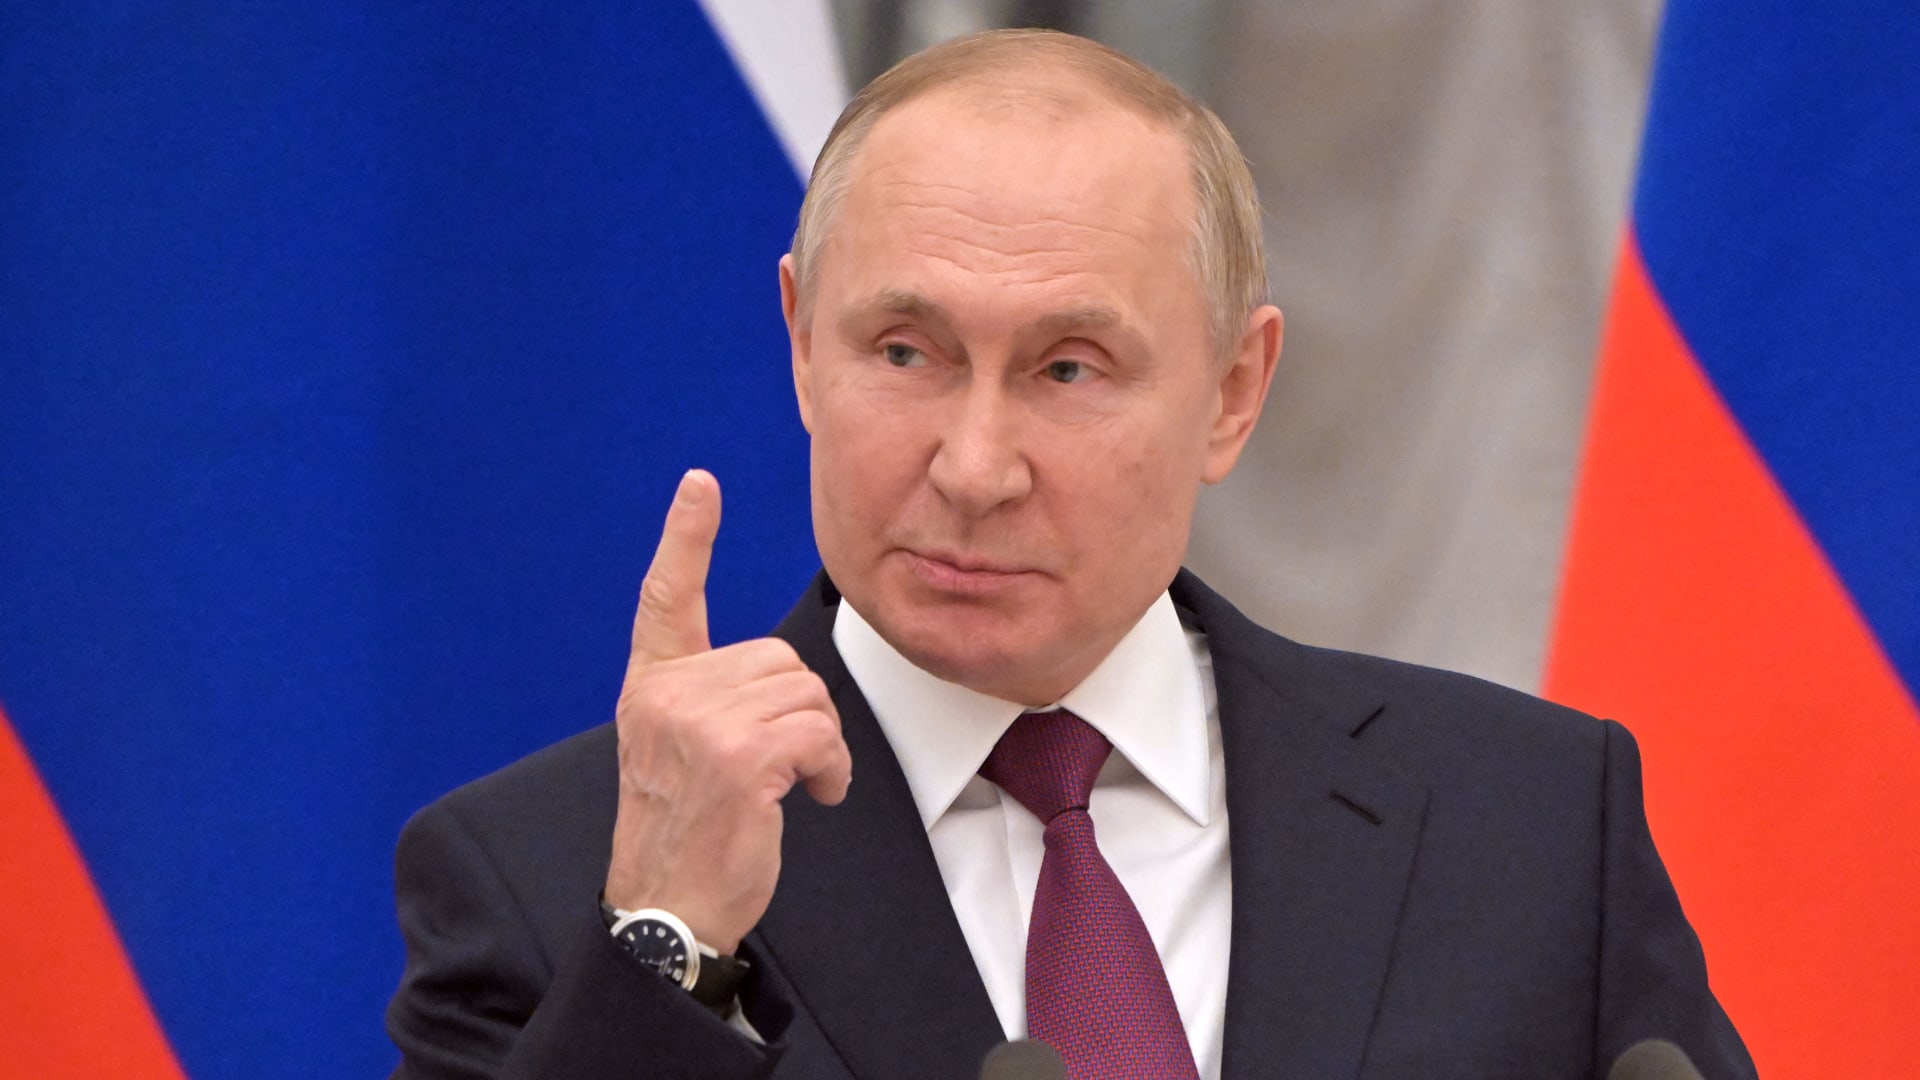 بوتين: منفتحون على الحوار ولكن مصالح وروسيا وأمنها "غير قابل للتفاوض" thumbnail